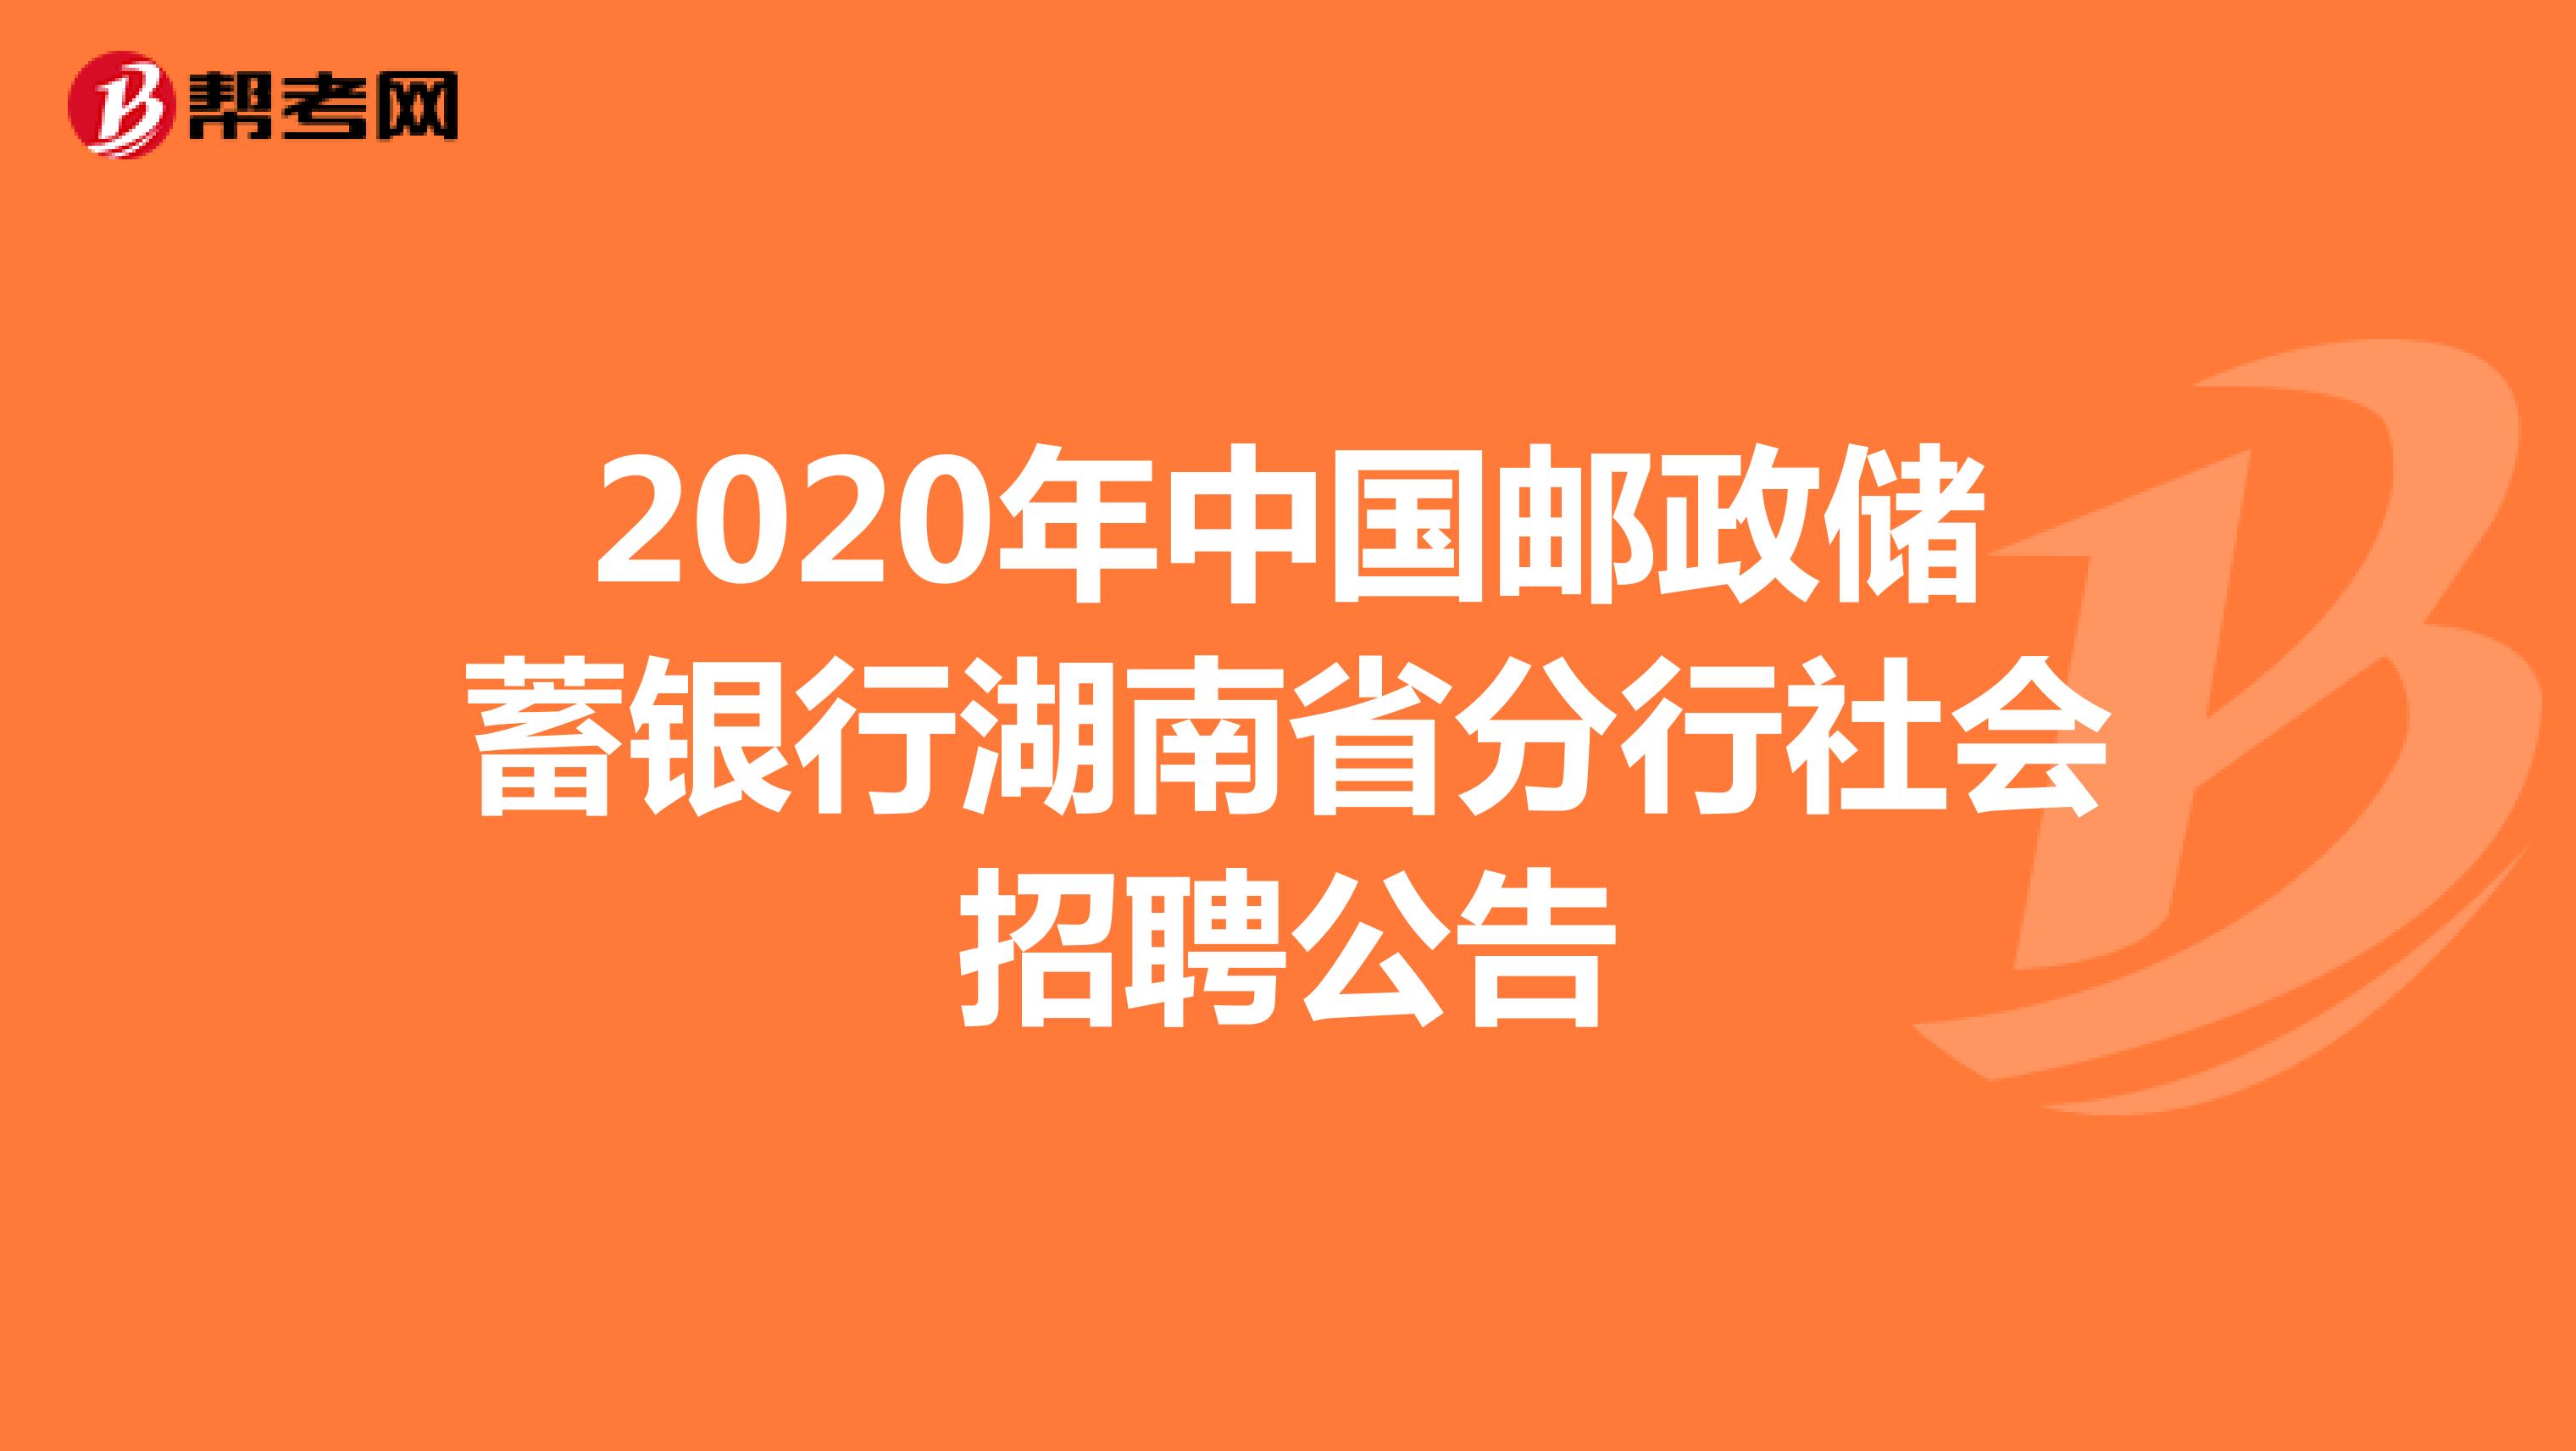 2020年中国邮政储蓄银行湖南省分行社会招聘公告